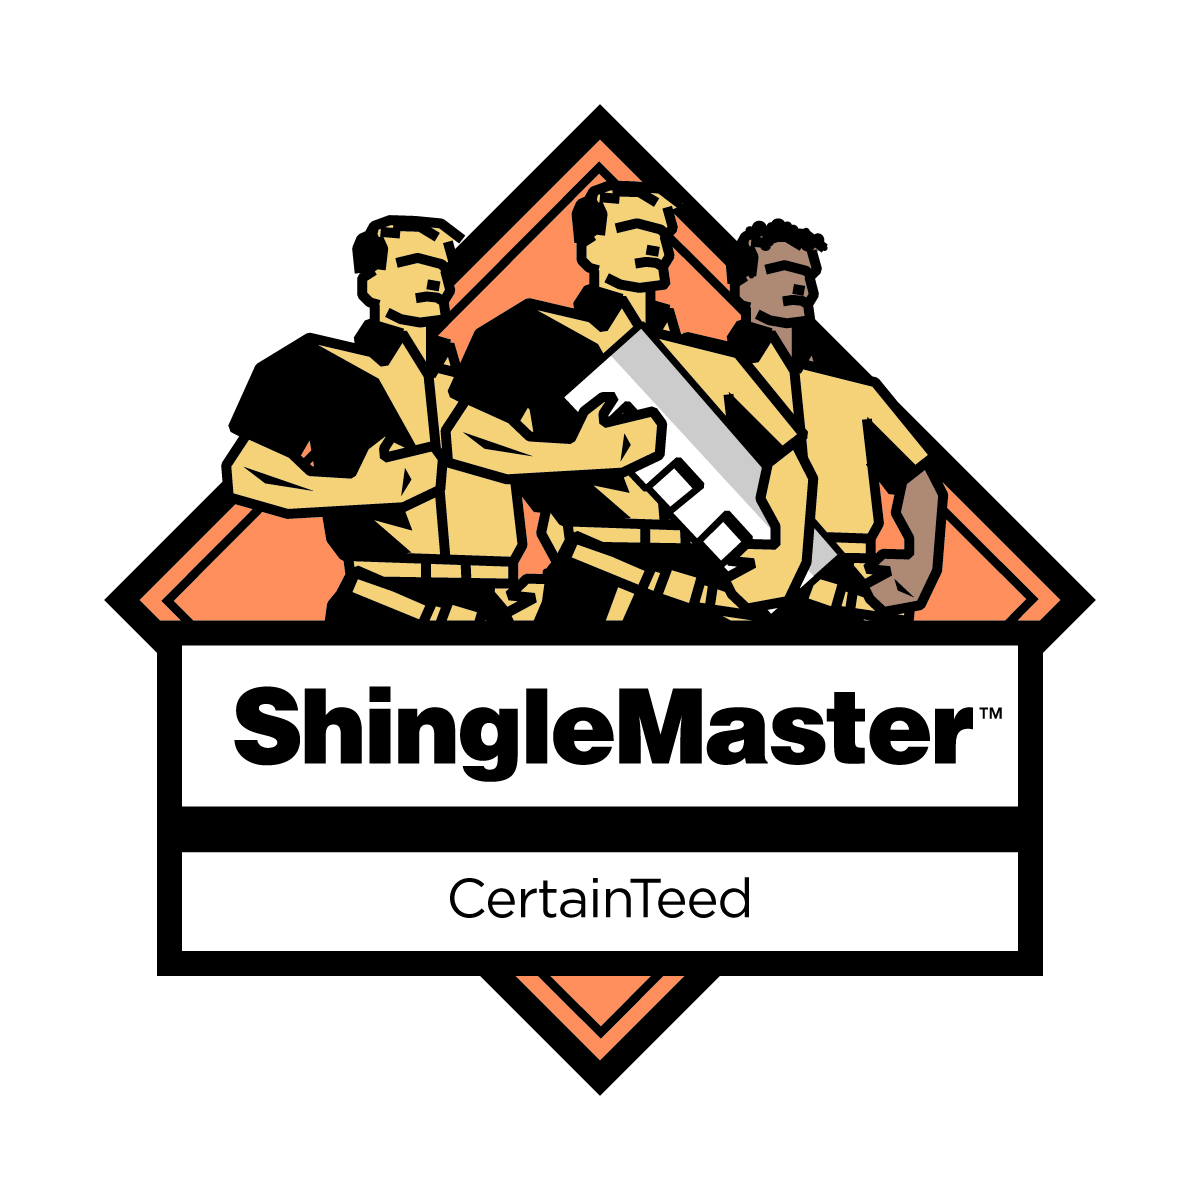 Image of shingle master CertainTeed logo